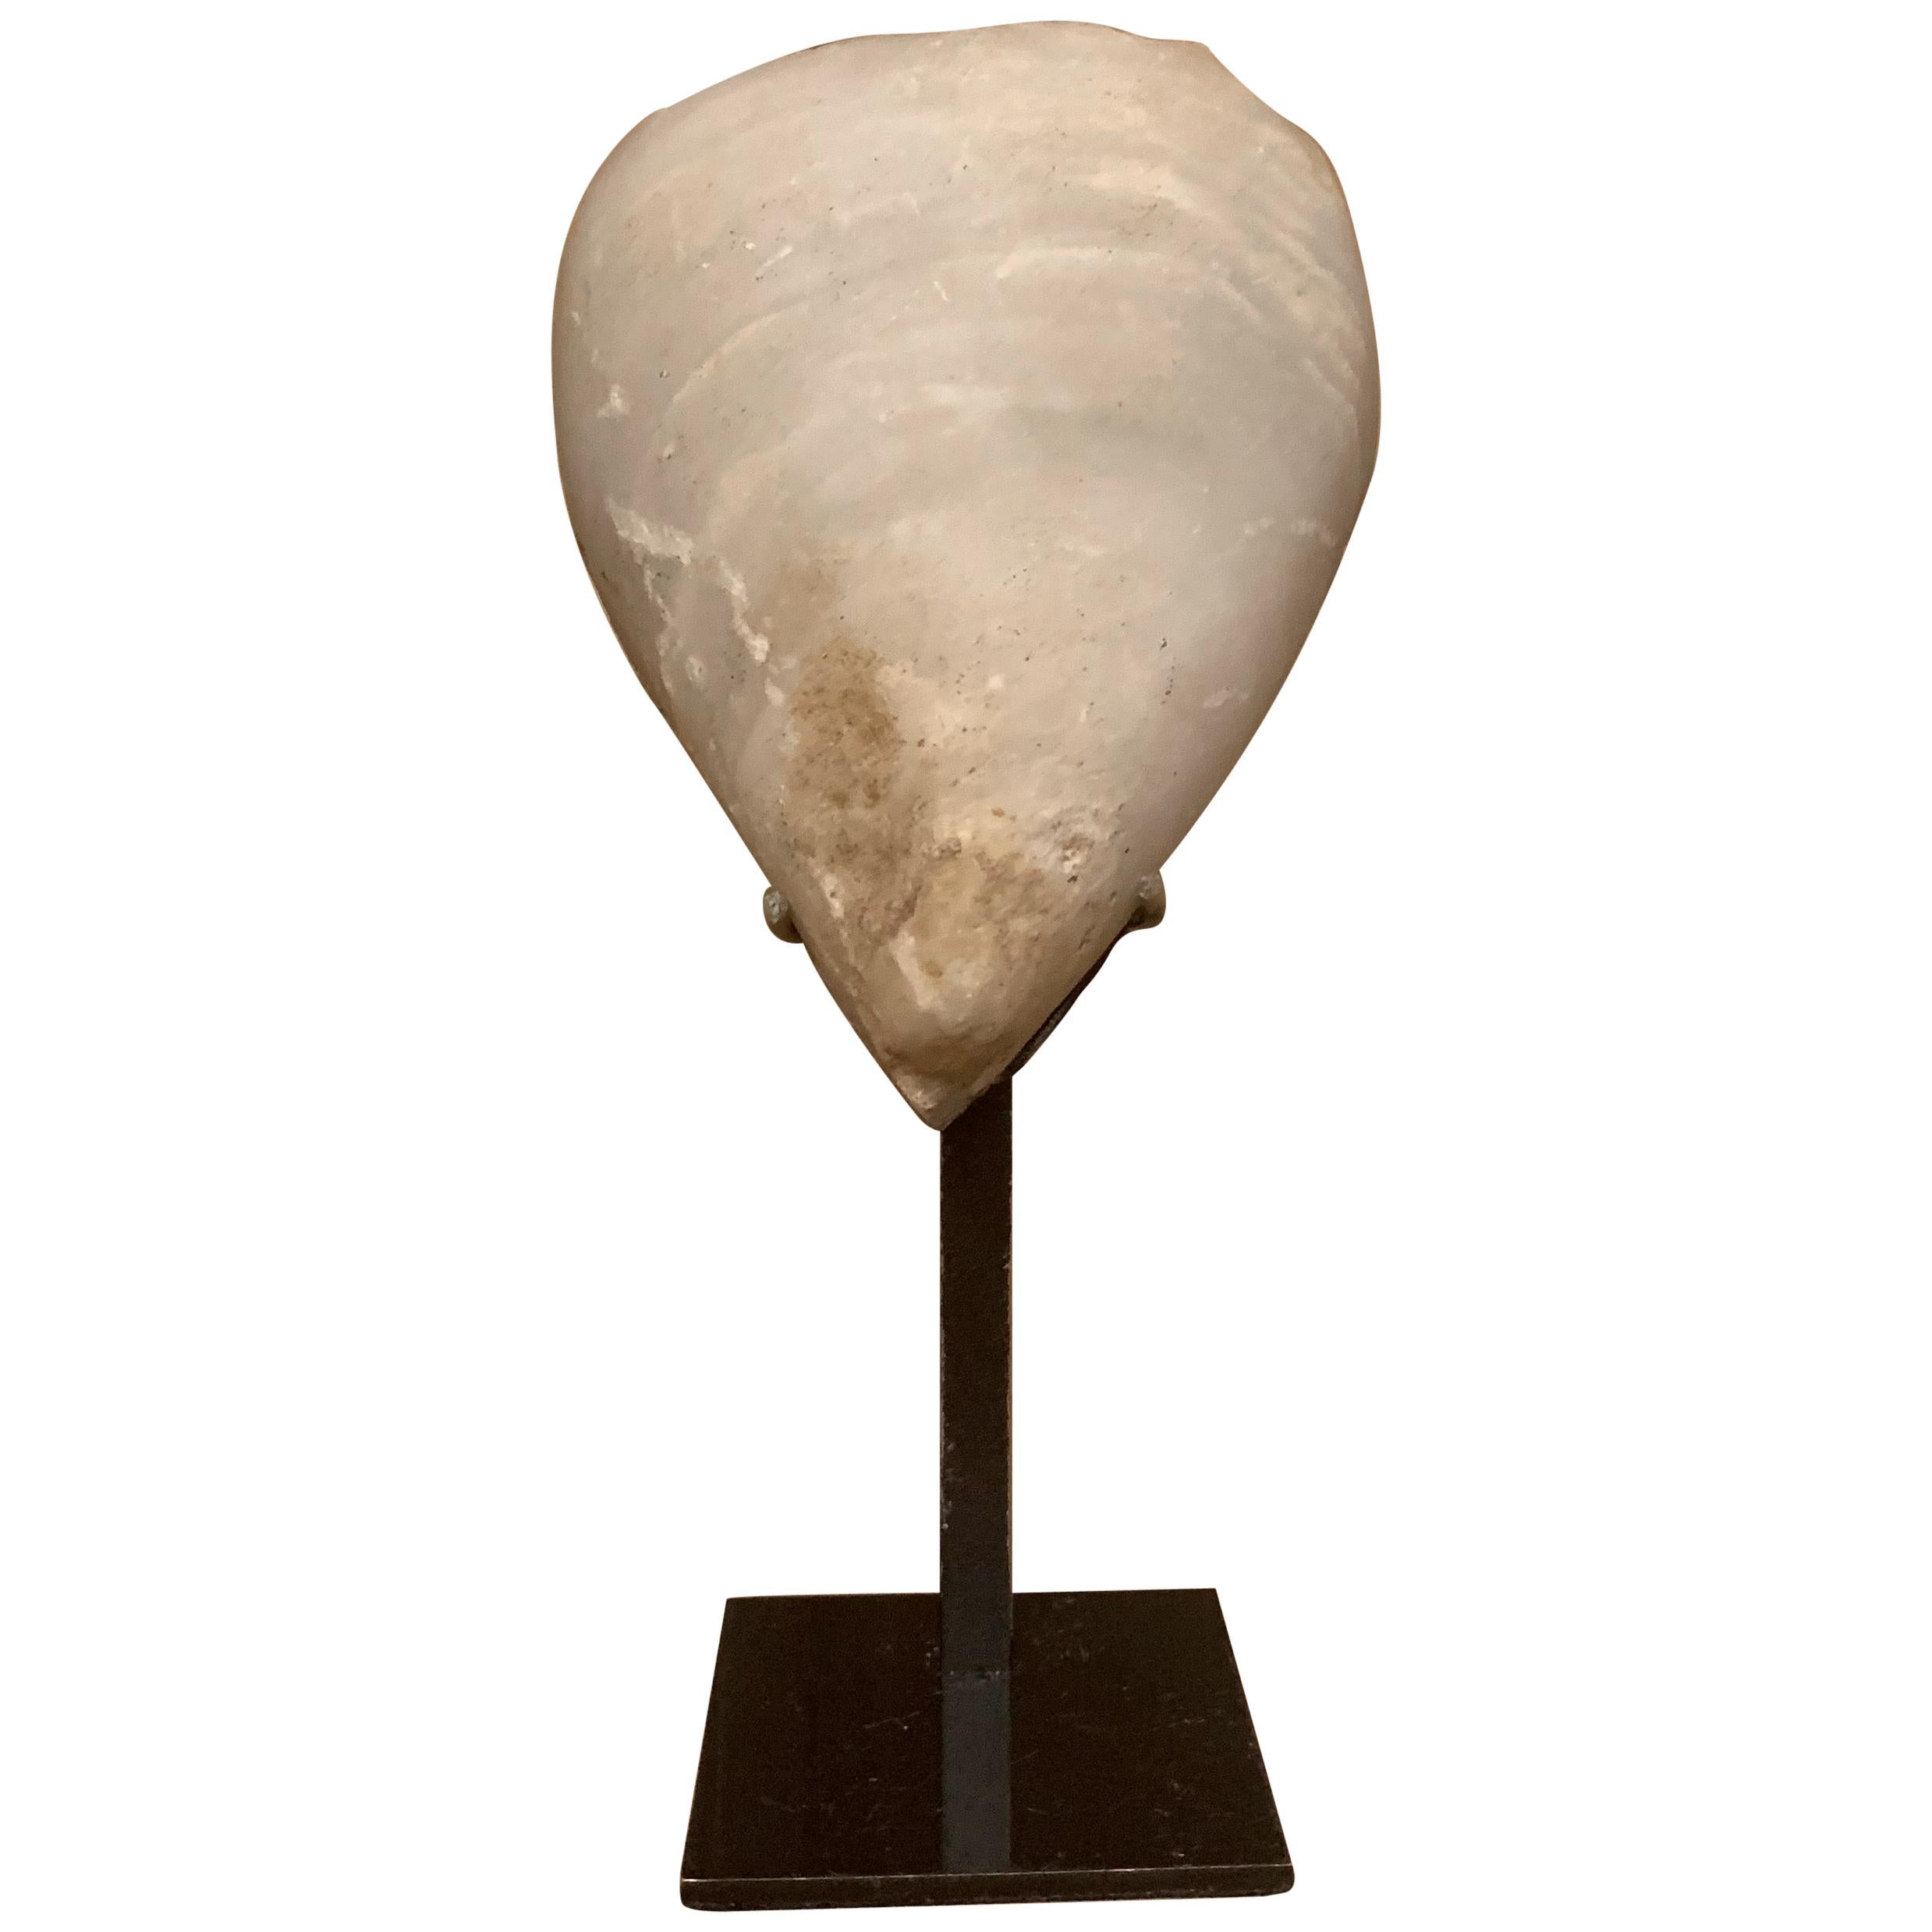 Tête d'étoile de paquebot préhistorique en marbre